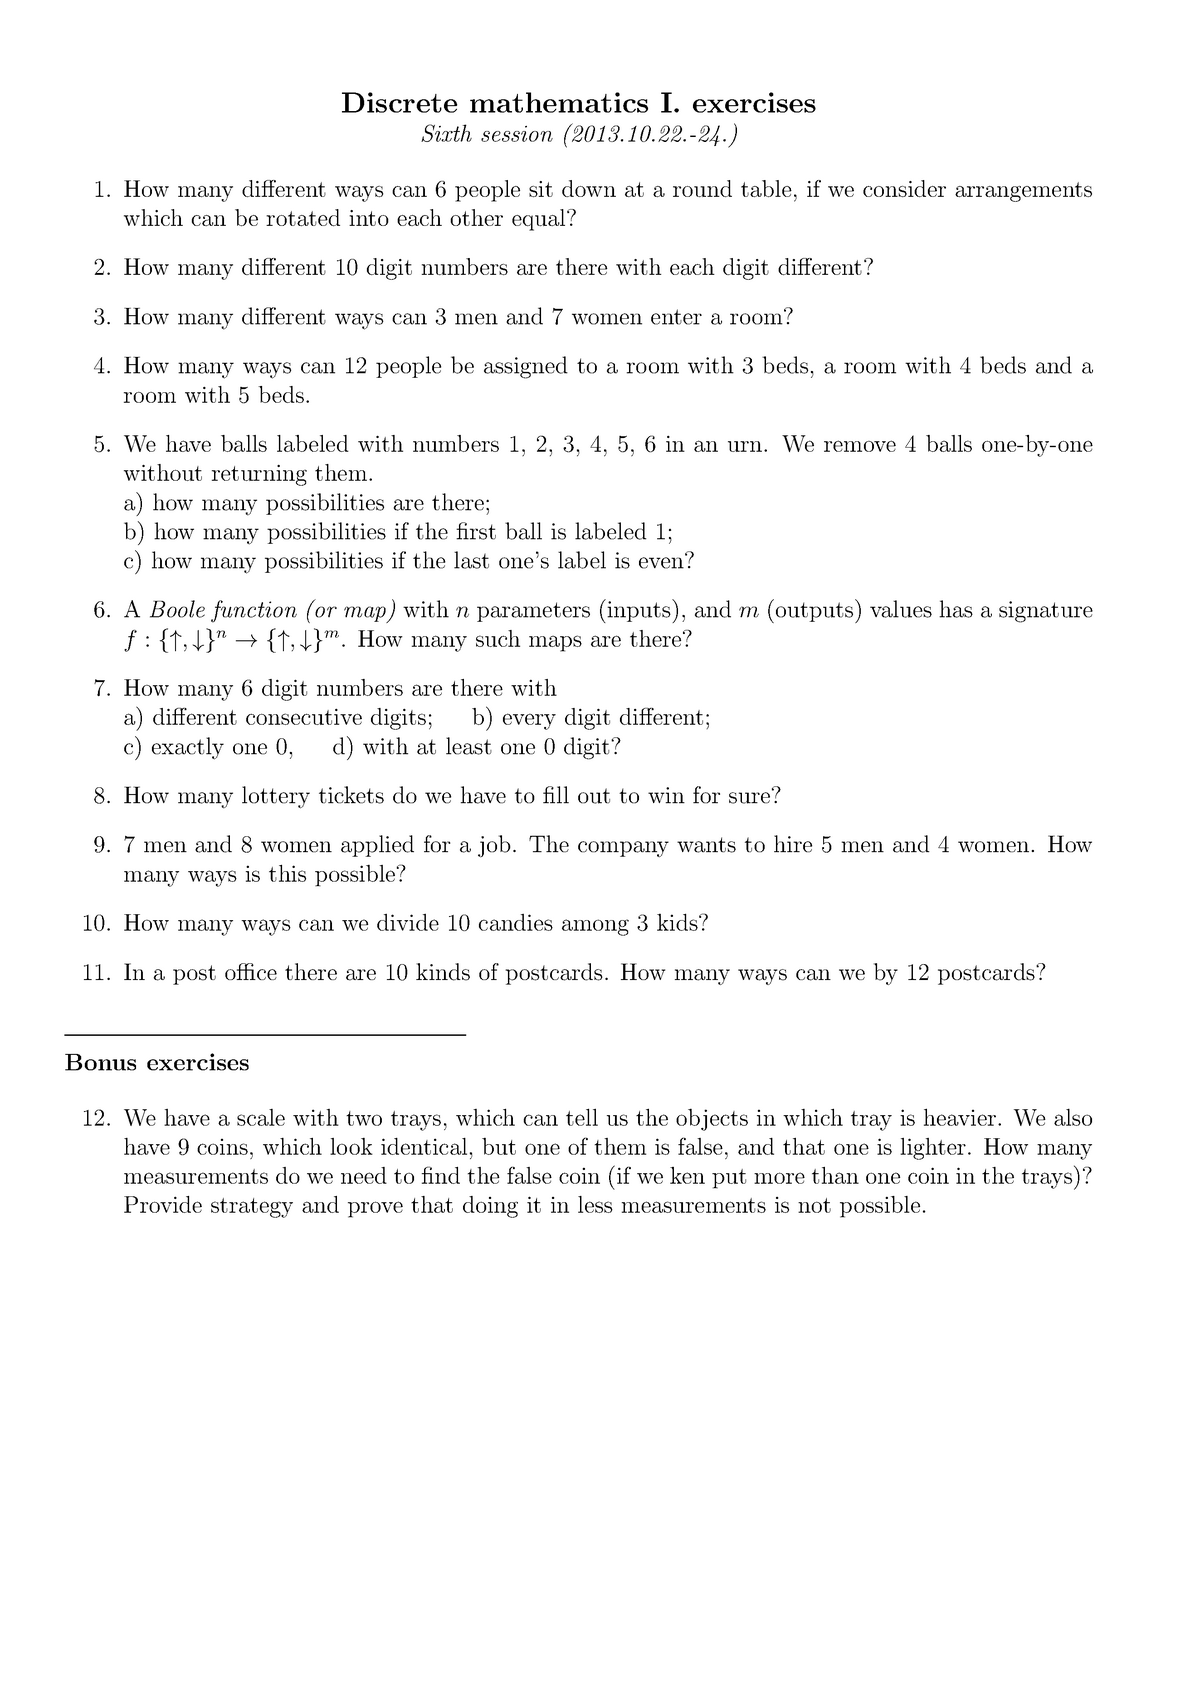 Dm1 Ex06 Practical Exercises For Discrete Math Discrete Mathematics Studocu